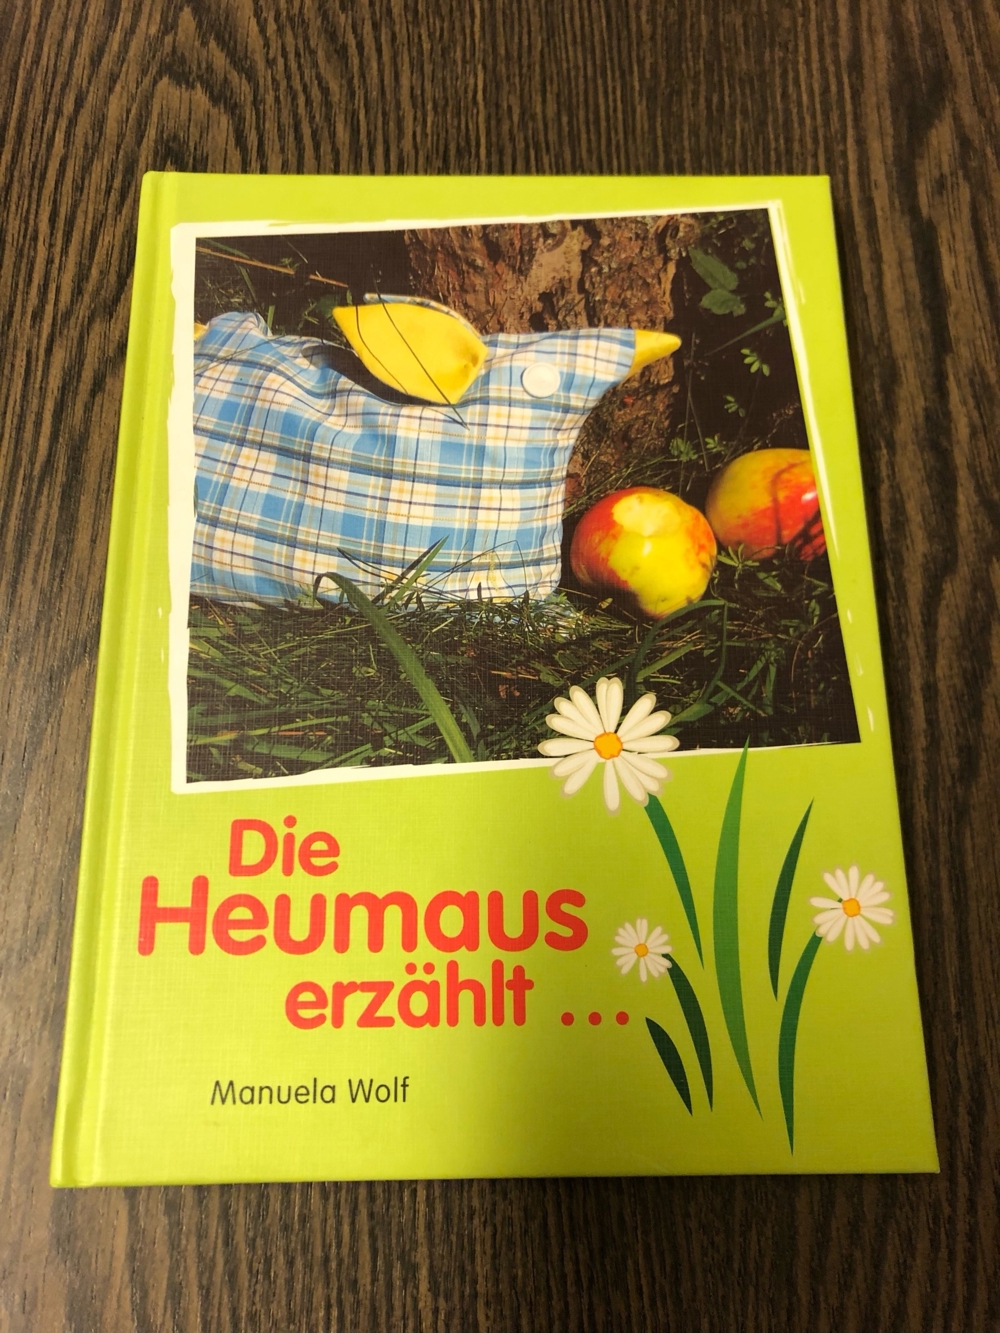 Die Heumaus erzählt, Manuela Wolf